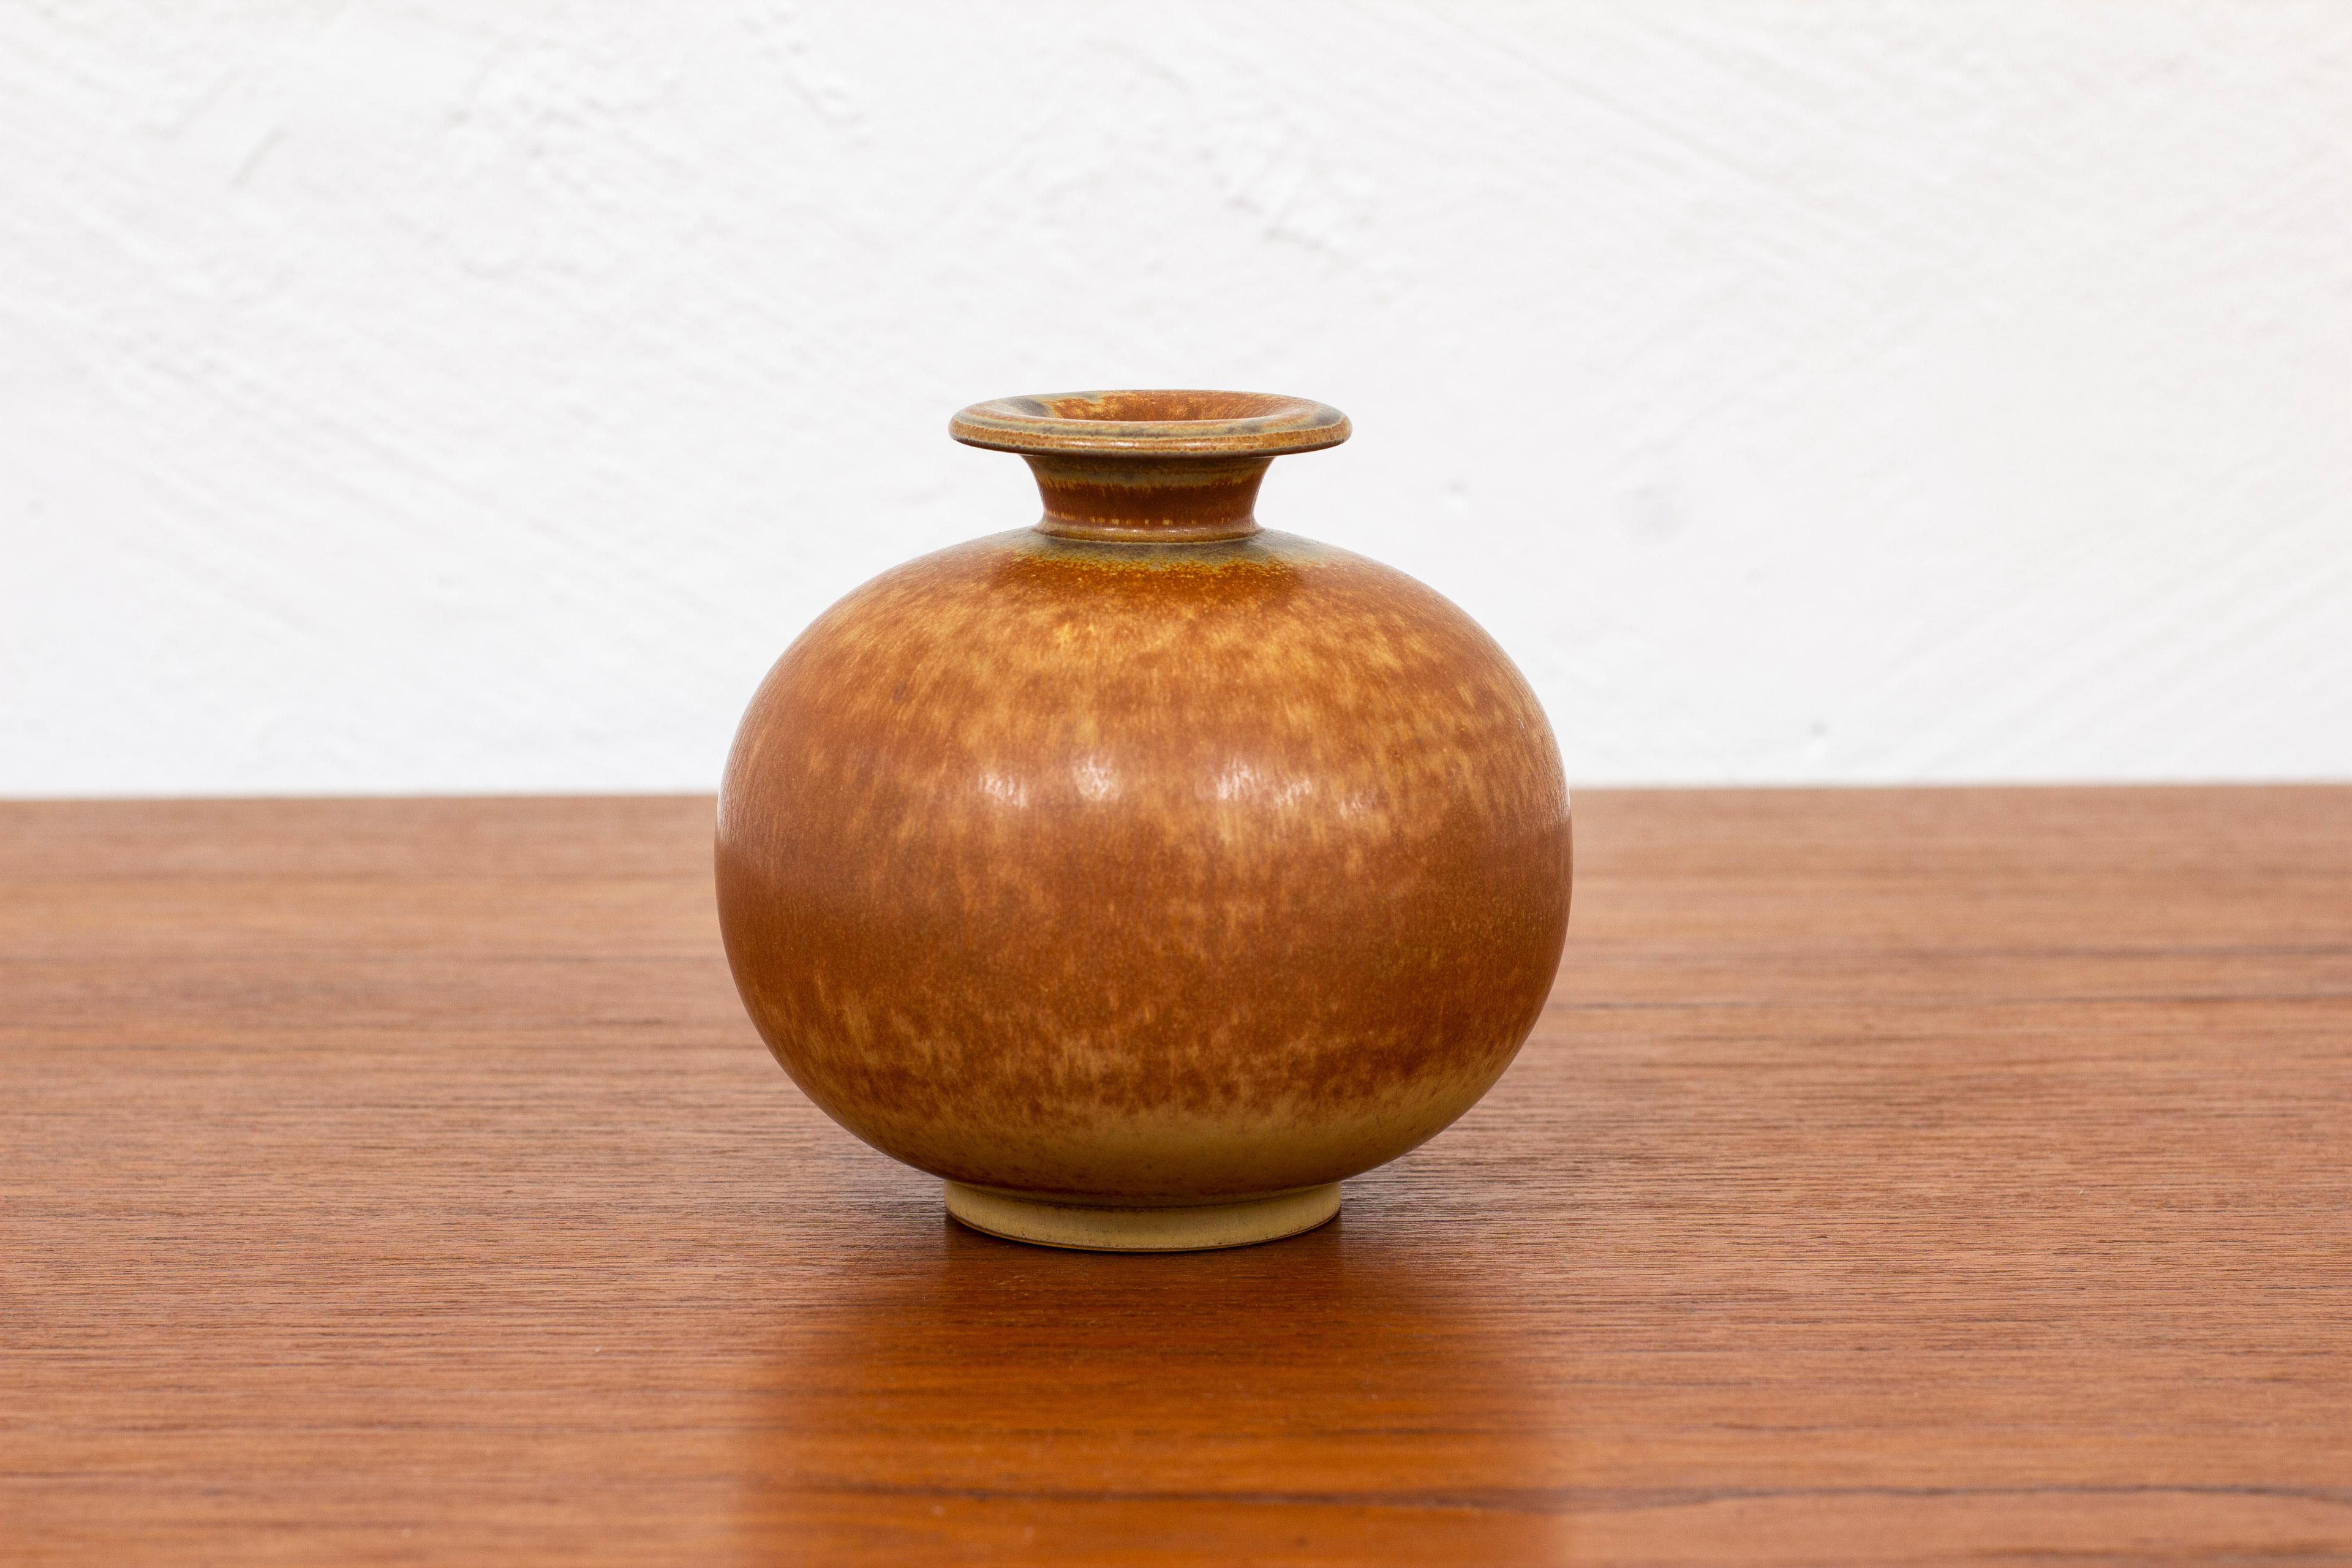 Vase en grès conçu par Gunnar Nylund. Fabriqué à la main à Rörstrand dans les années 1940. Glaçage avec des tons bruns brûlés. Très bon état vintage avec une légère usure et patine.

